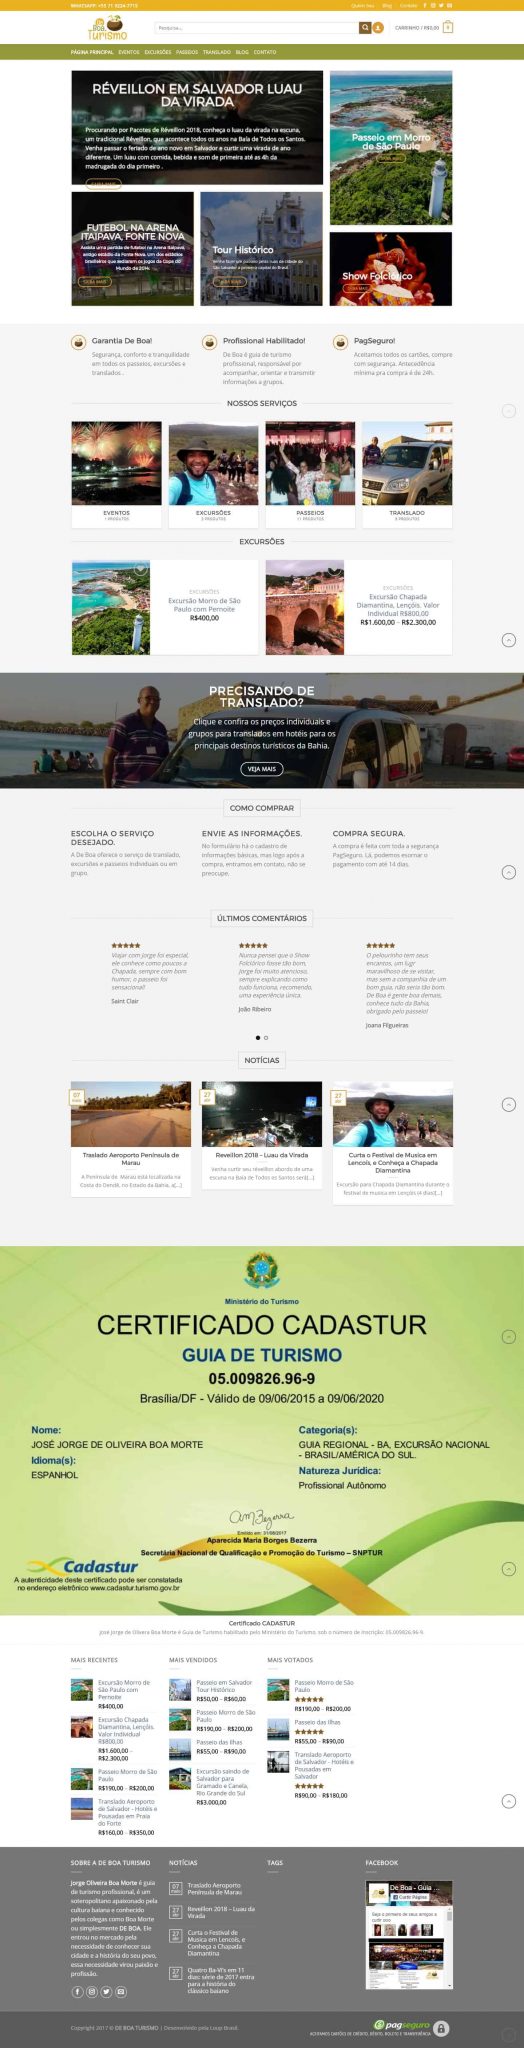 Página principal do site De Boa Turismo.